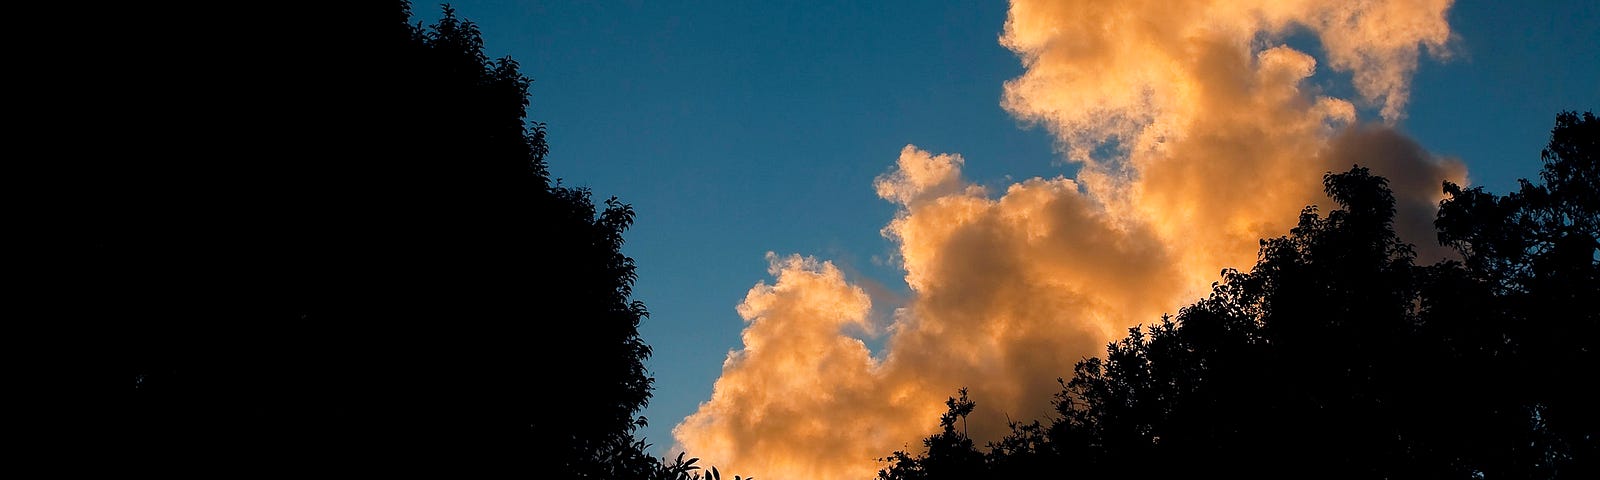 A photo of orange-lit clouds in a blue sky.